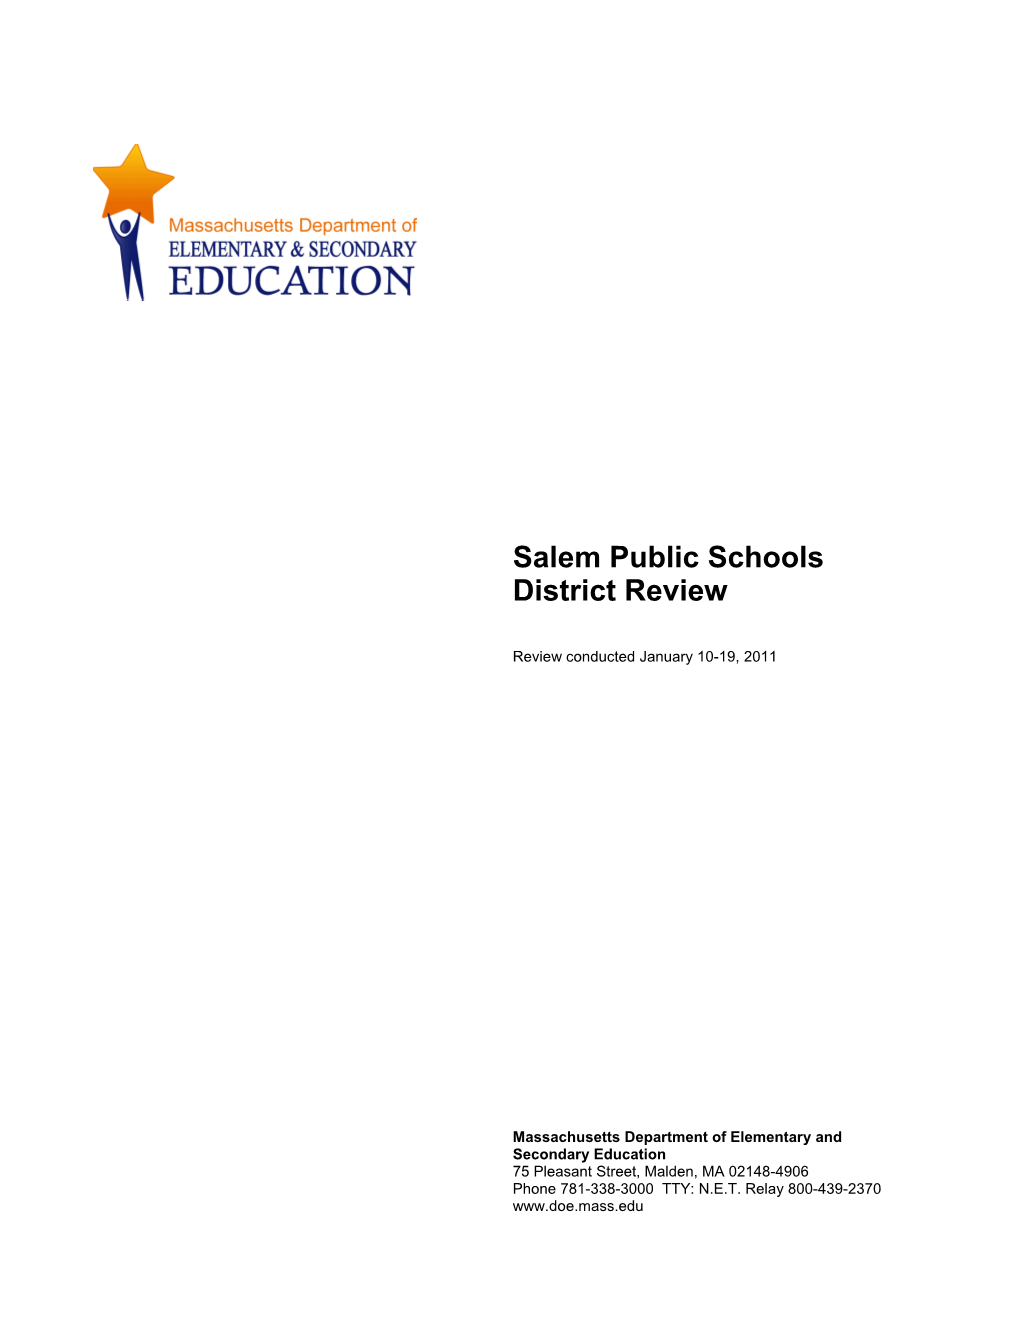 Salem Public Schools District Review Report, 2011 Onsite